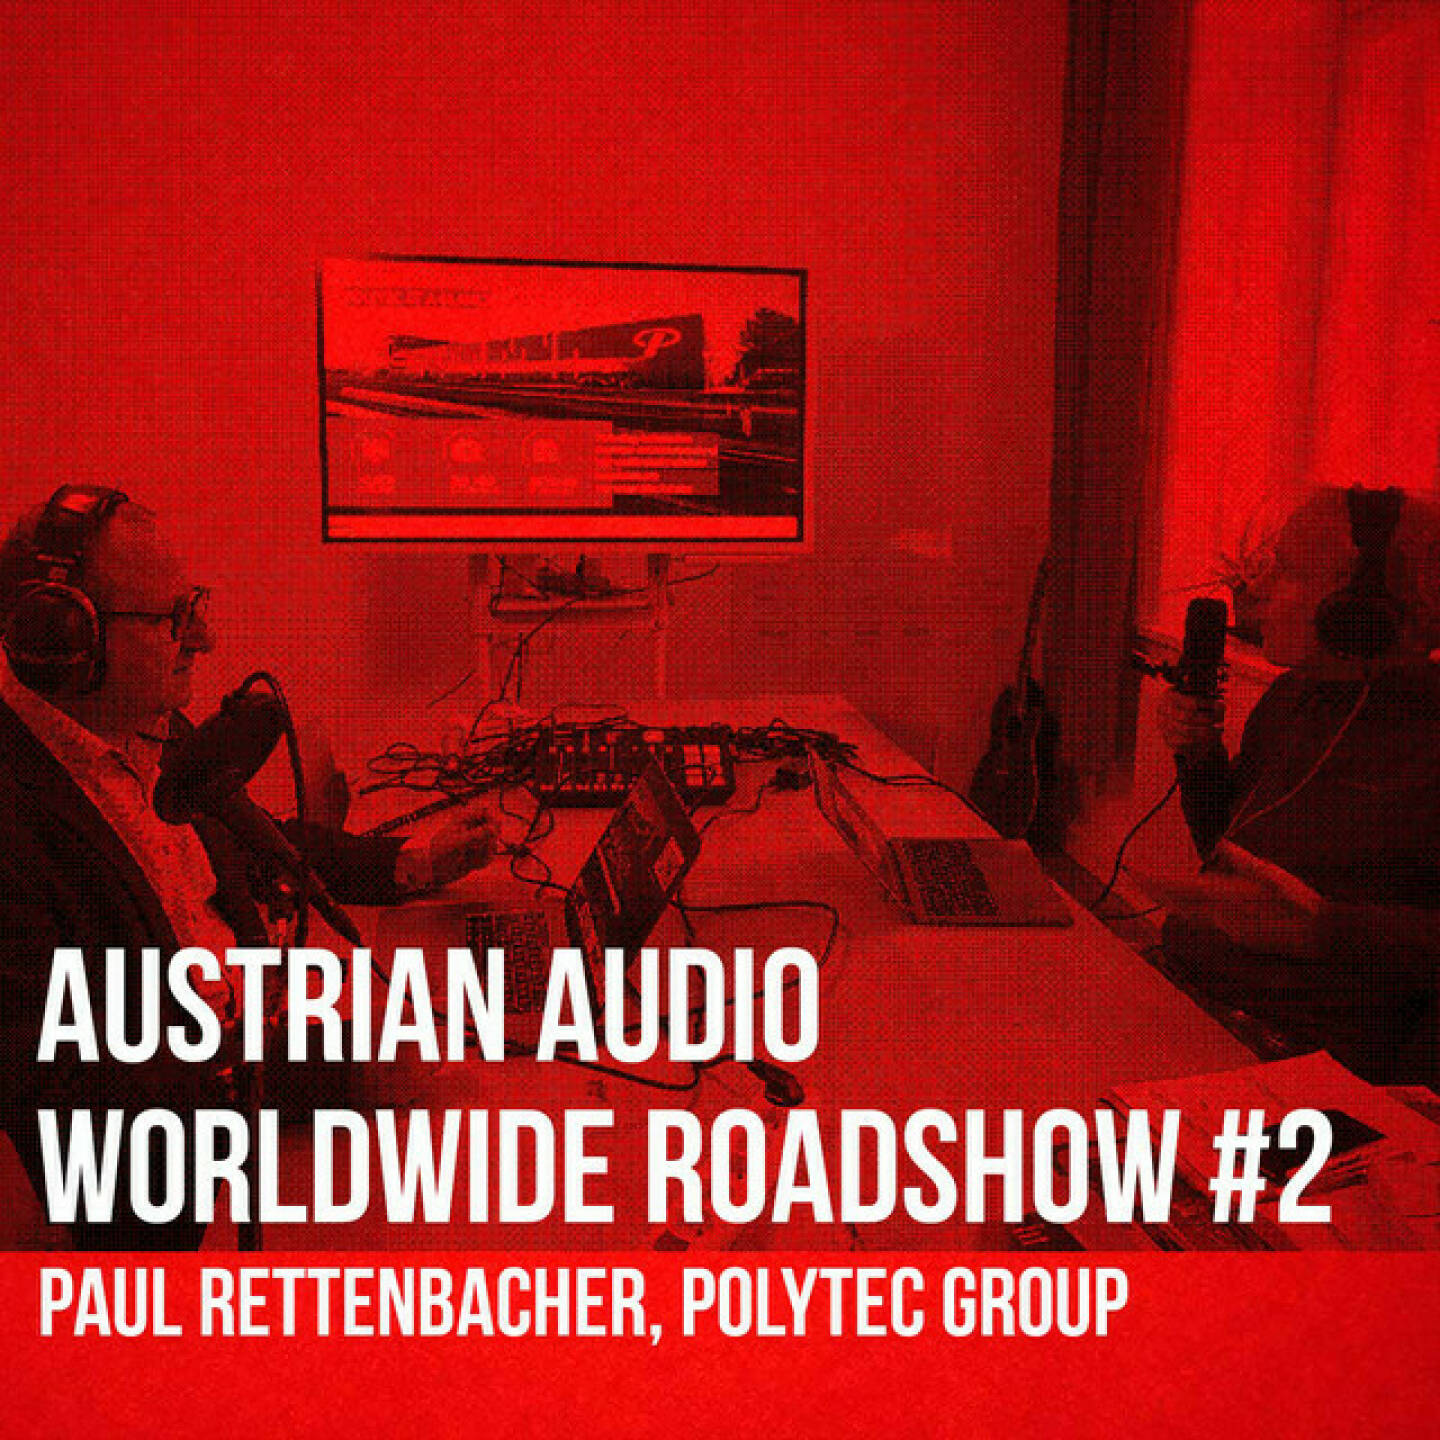 https://open.spotify.com/episode/4tePISva8aTf0FSL0o0dqp
Austrian Audio Worldwide Roadshow #2 - Paul Rettenbacher, Polytec Group - In von uns veranstalteten physischen Privatanleger-Roadshows haben wir mehr als 500 Präsentationen von Kapitalmarktteilnehmern gehostet, in den digitalen Austrian VIsual Worldwide Roadshows bisher knapp 100. Und nun schlagen wir dieses Kapitel auch Audio auf. Christian Drastil geht in Folge 2 mit Paul Rettenbacher, Head of IR bei der Polytec Group, die aktuelle Präsentation des Unternehmens durch. Die Slides können unter https://boerse-social.com/austrianworldwideroadshow eingesehen werden.